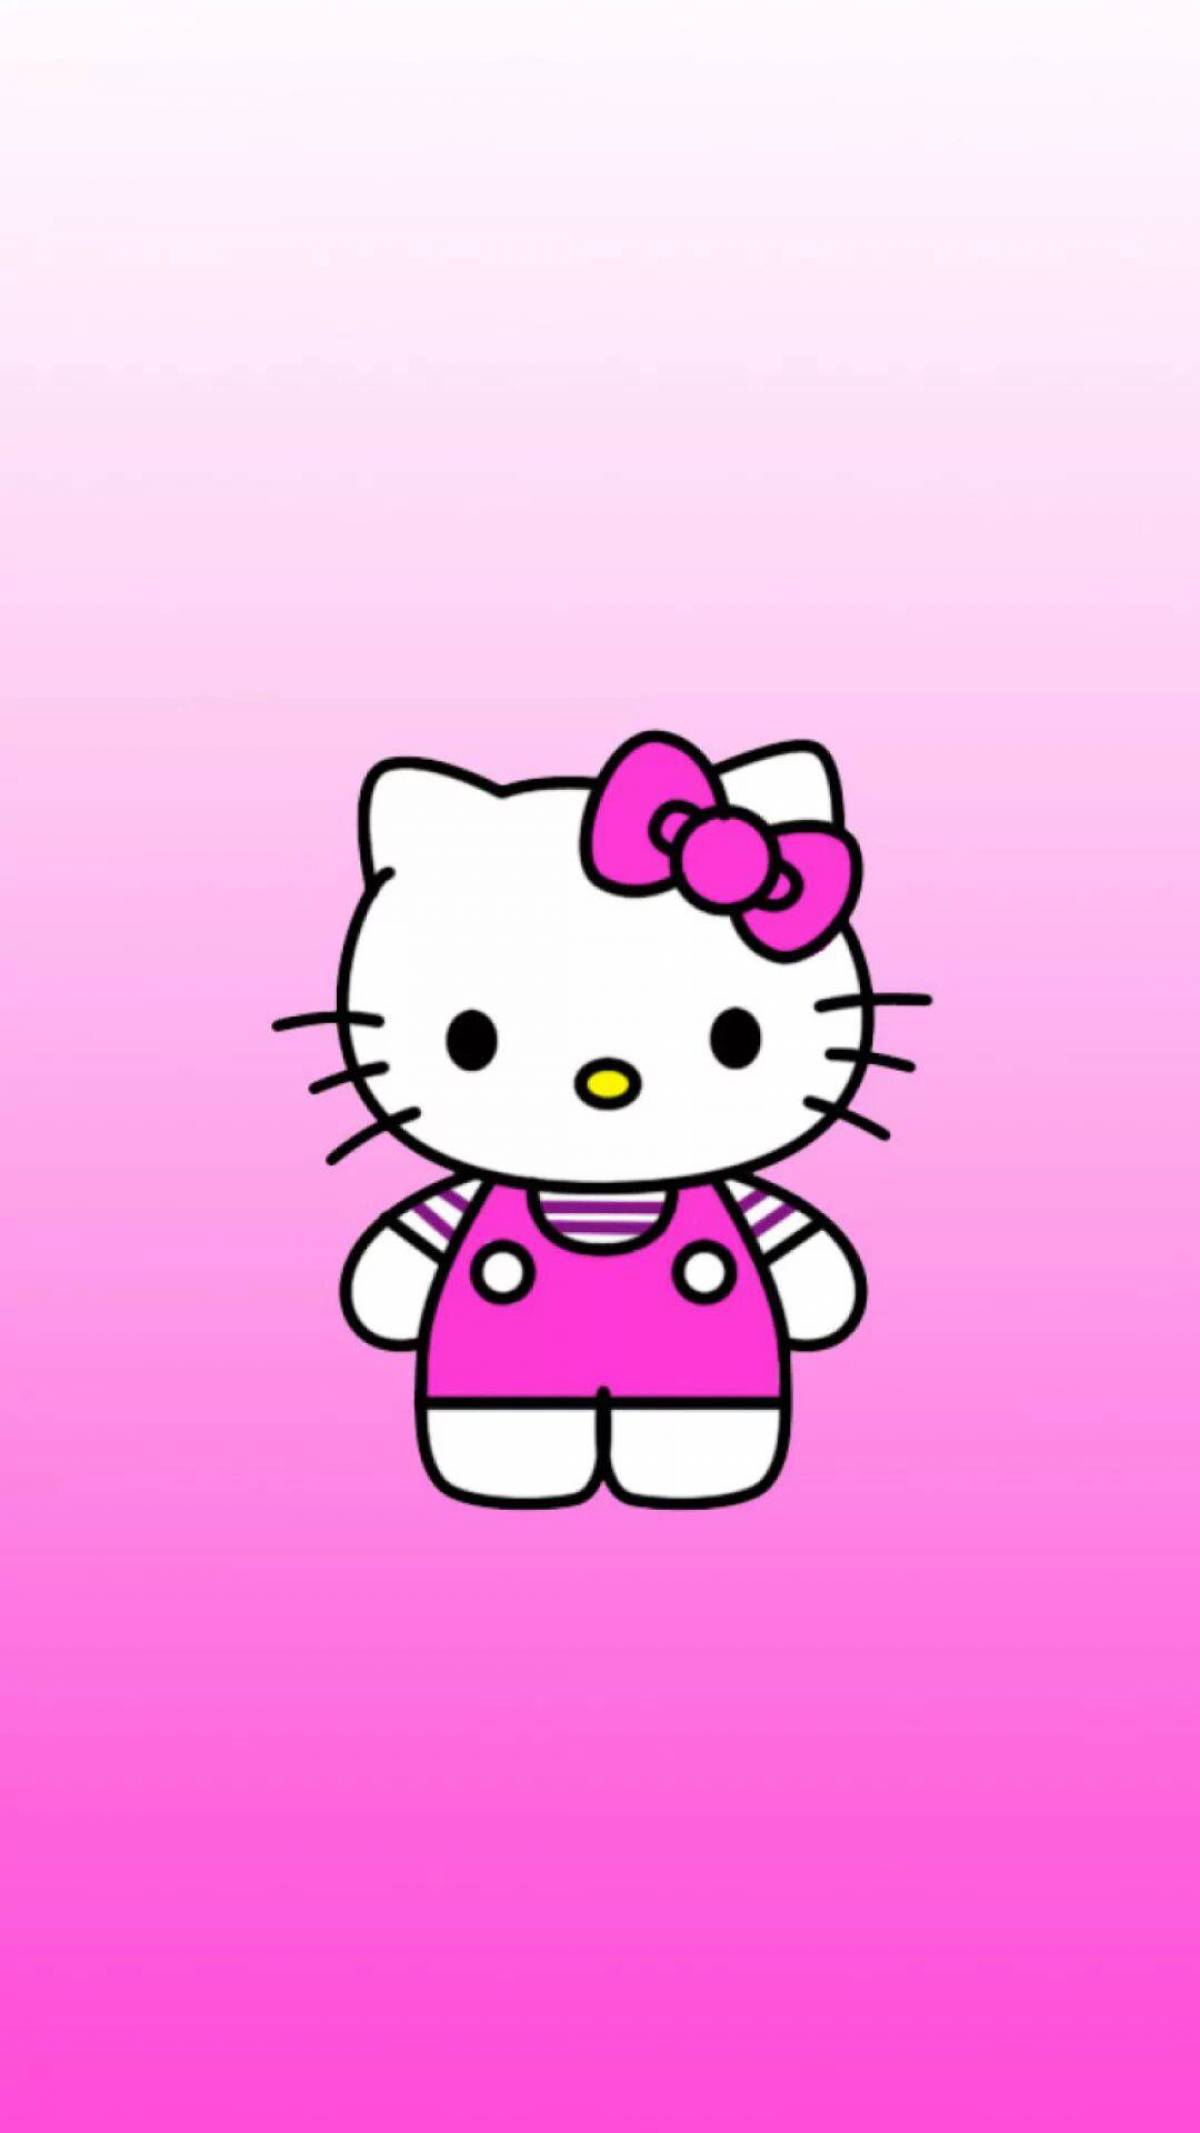 Картинка на заставку телефона для девочки. ХЕЛРК Кити. Хелло Китти розовая. Х̆̈ӗ̈л̆̈л̆̈о̆̈ў̈ К̆̈Й̈Т̆̈Й̈. Зело киттм.